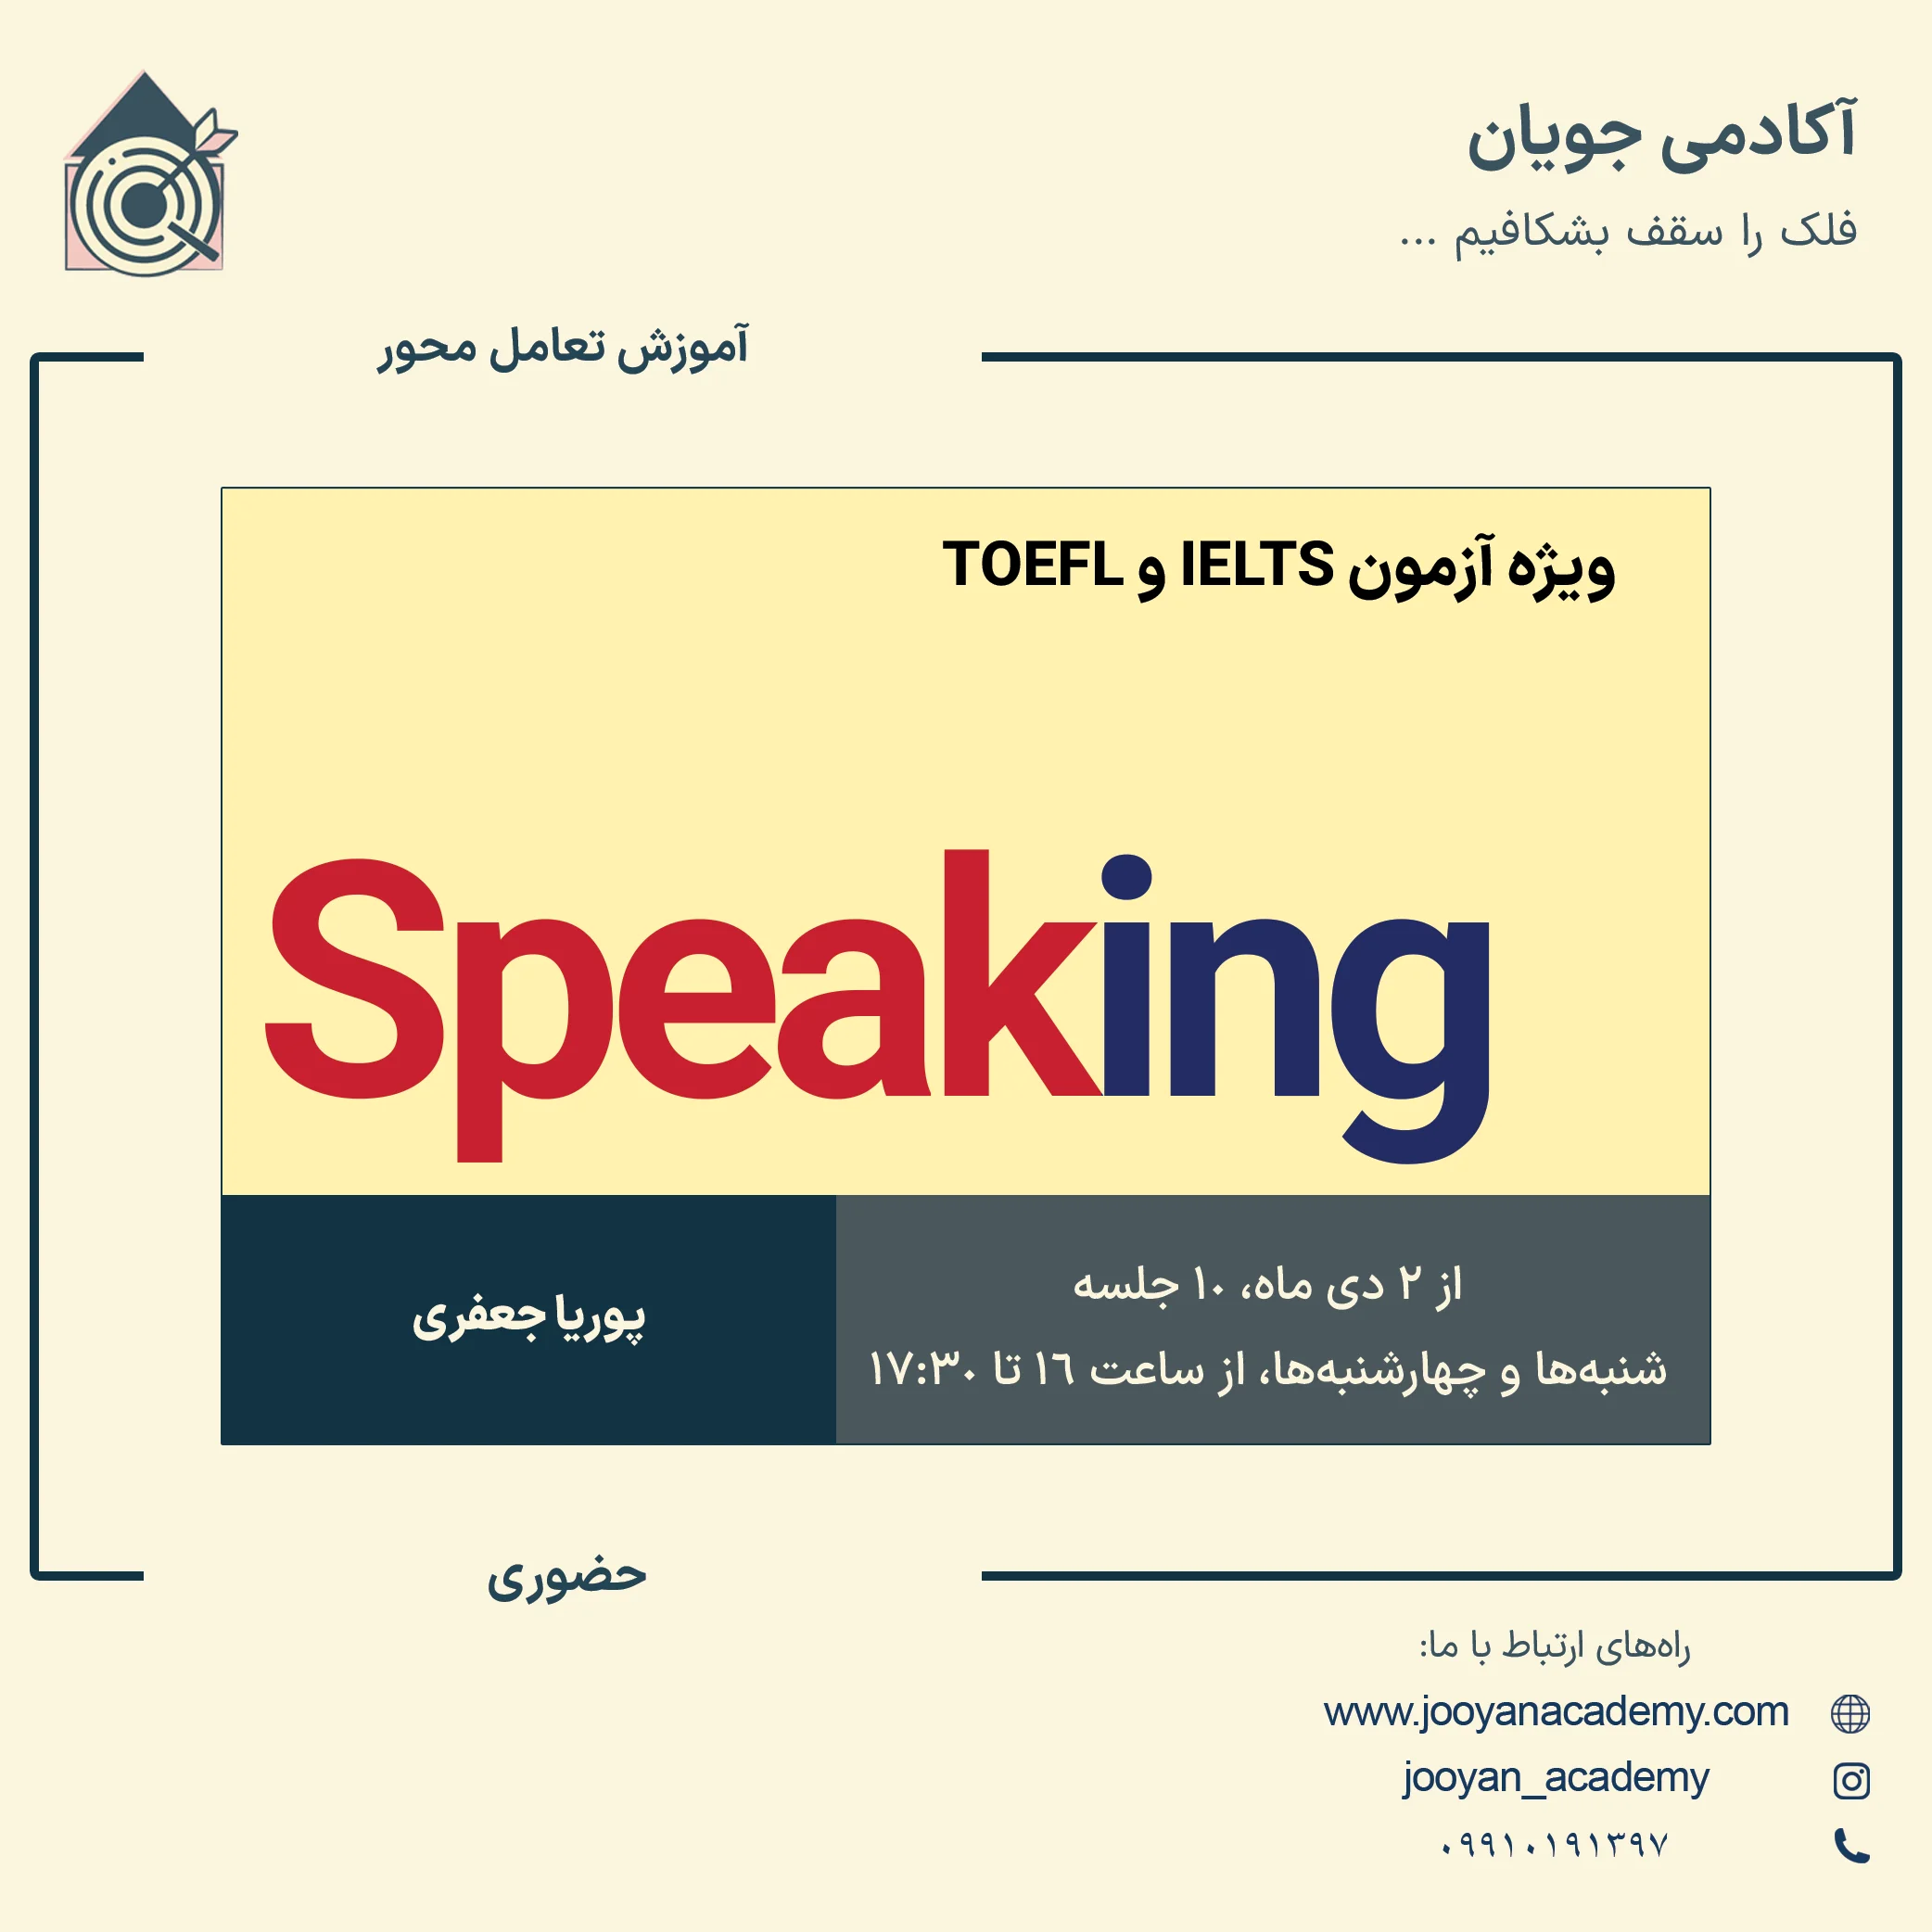 دوره آموزش مهارت Speaking ویژه آزمون IELTS و TOEFL